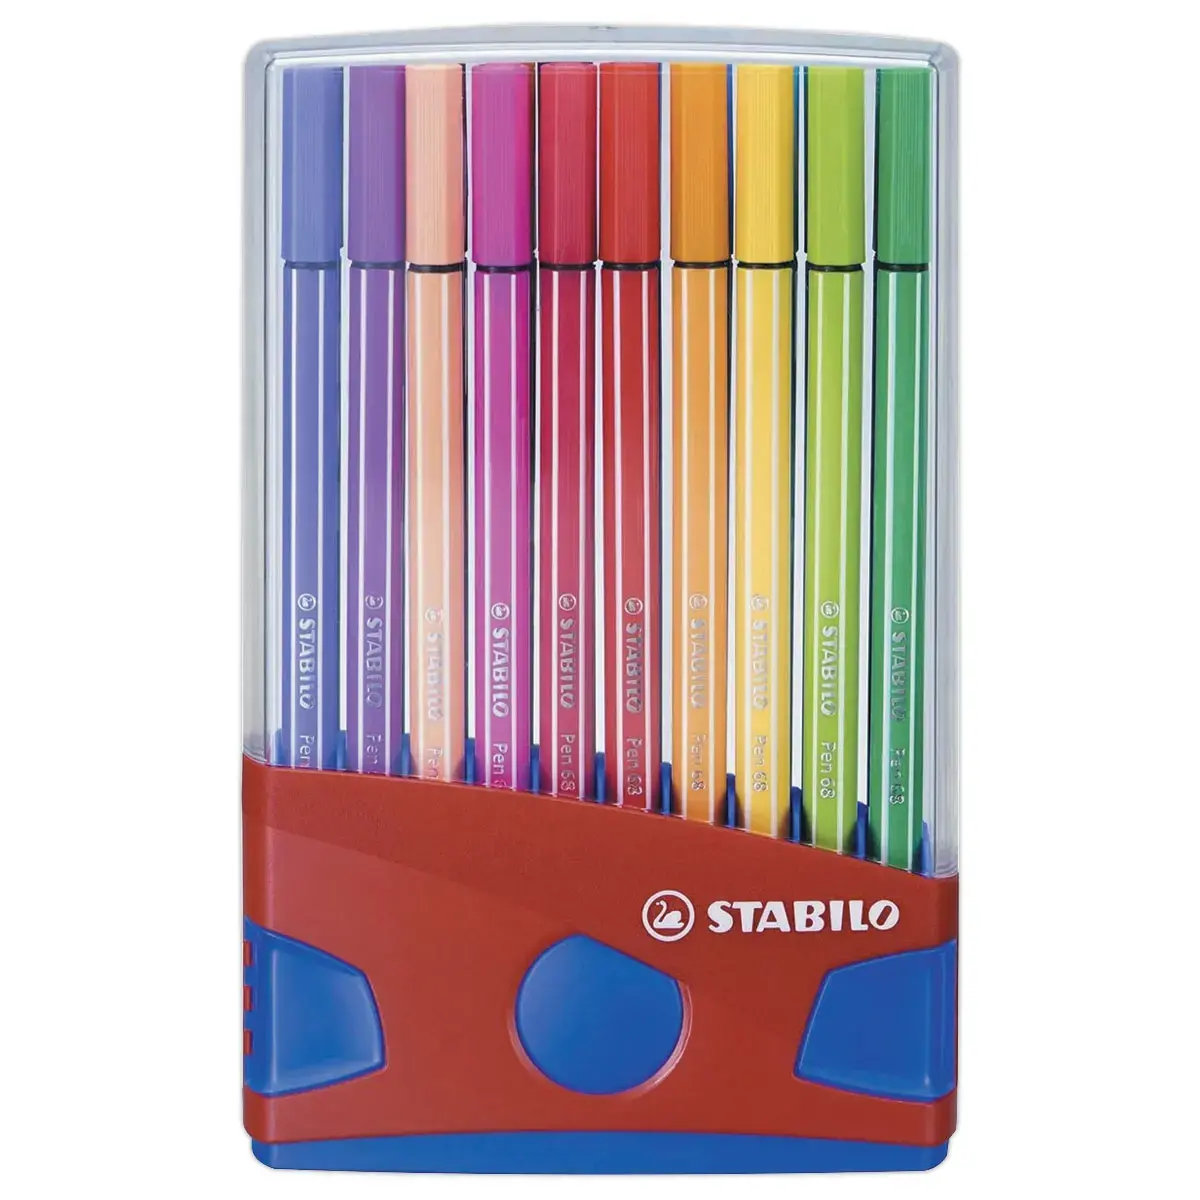 20 Feutres pointe moyenne Pen 68 Colorparade - Coloris assortis - STABILO photo du produit